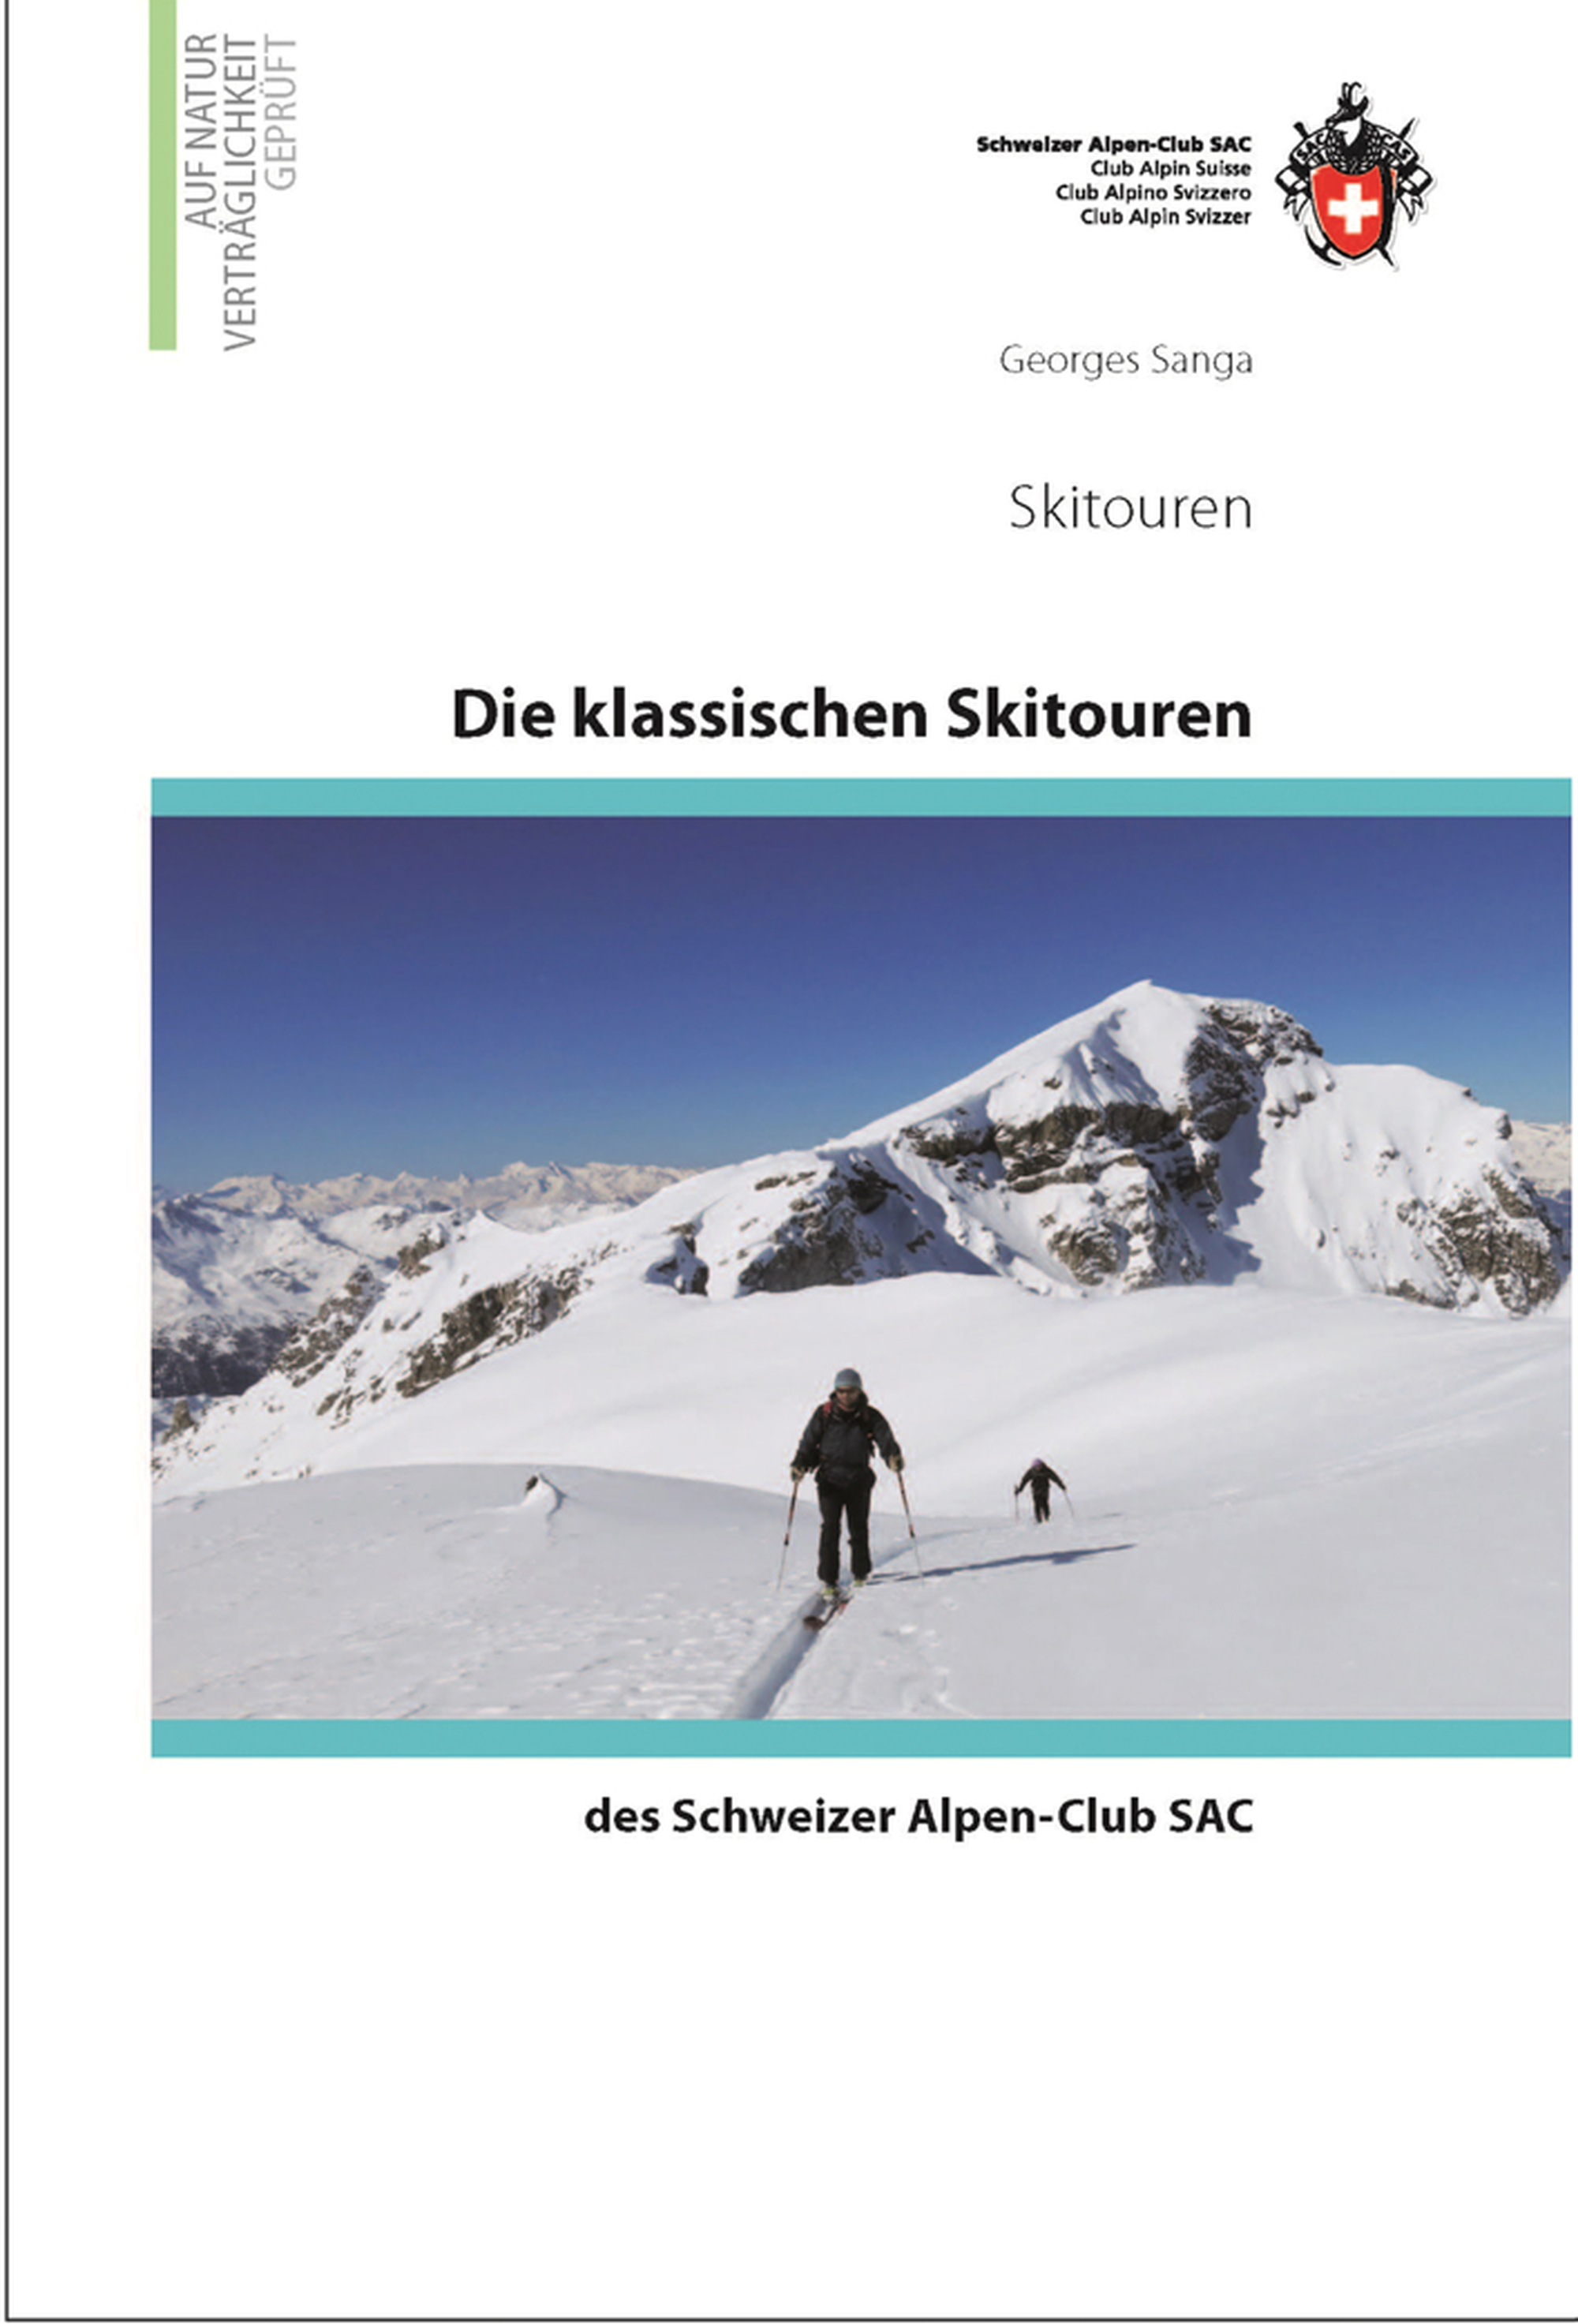 «Die klassischen Skitouren des Schweizer Alpen-Club SAC»